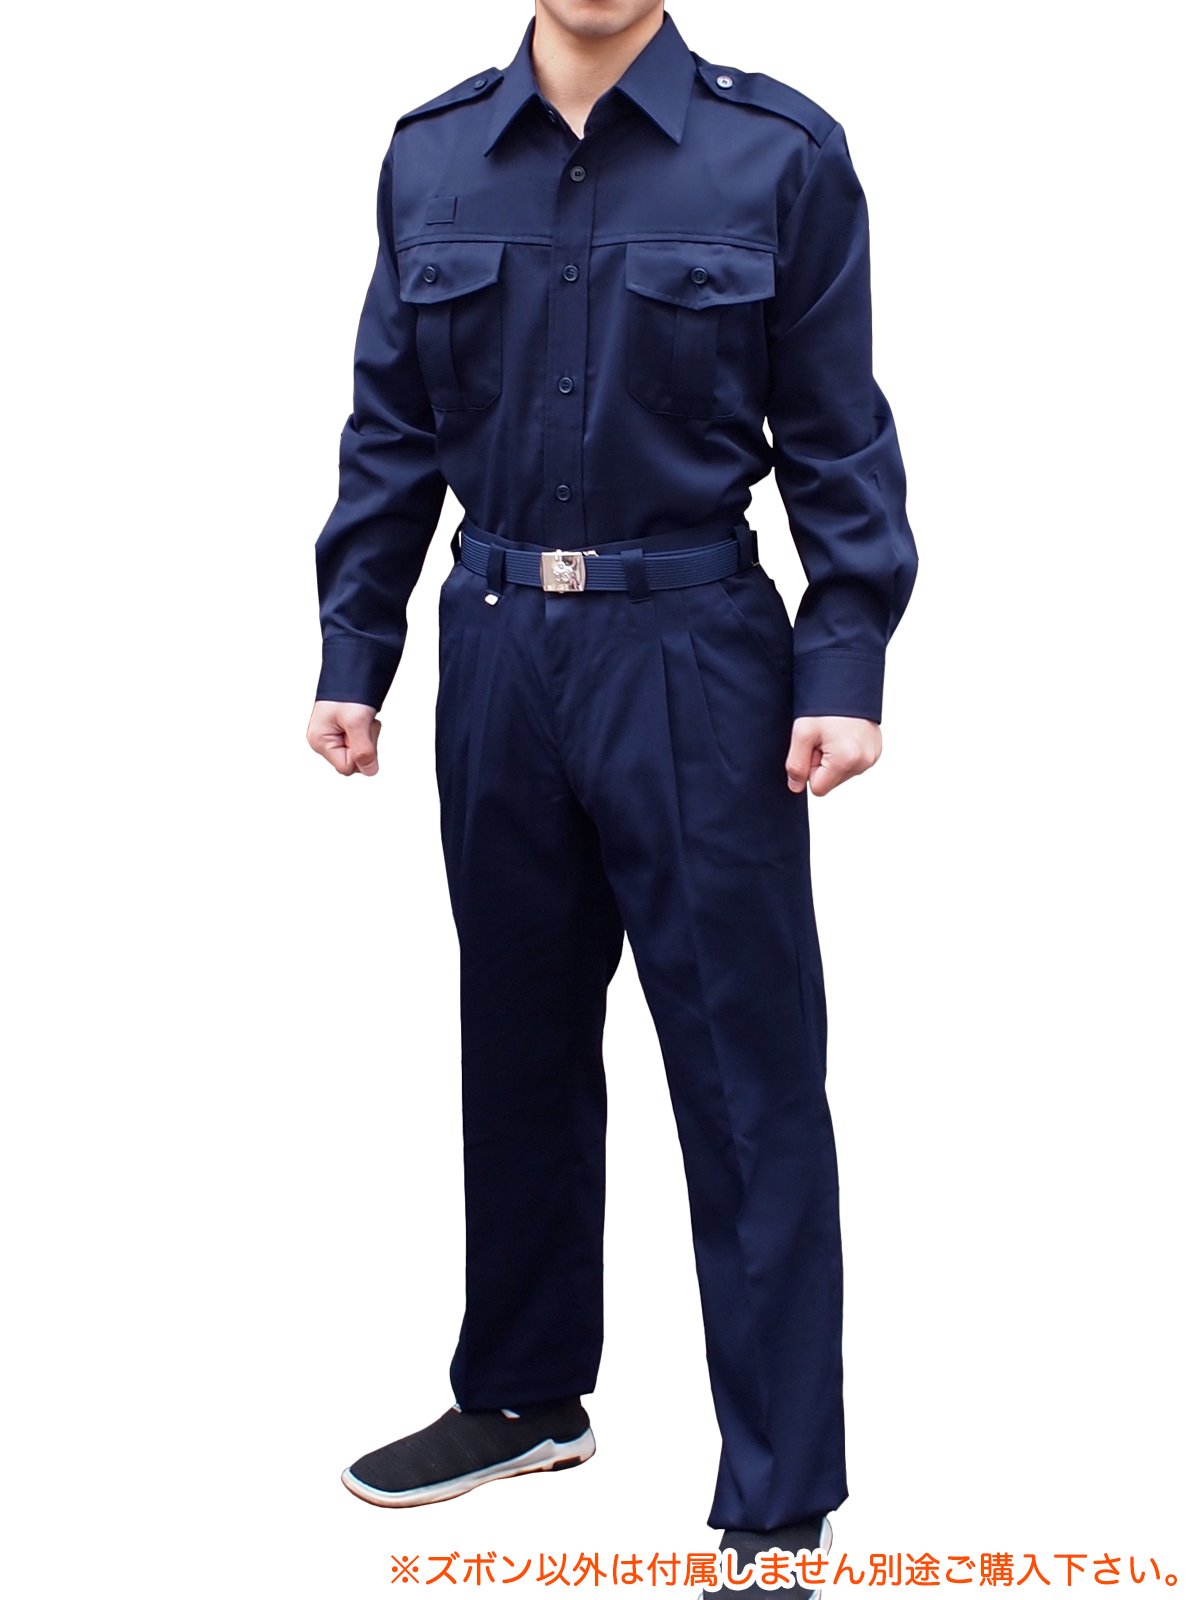 消防作業服米式ズボン - 【公式通販】消防用品通販の【消防ユニフォーム】